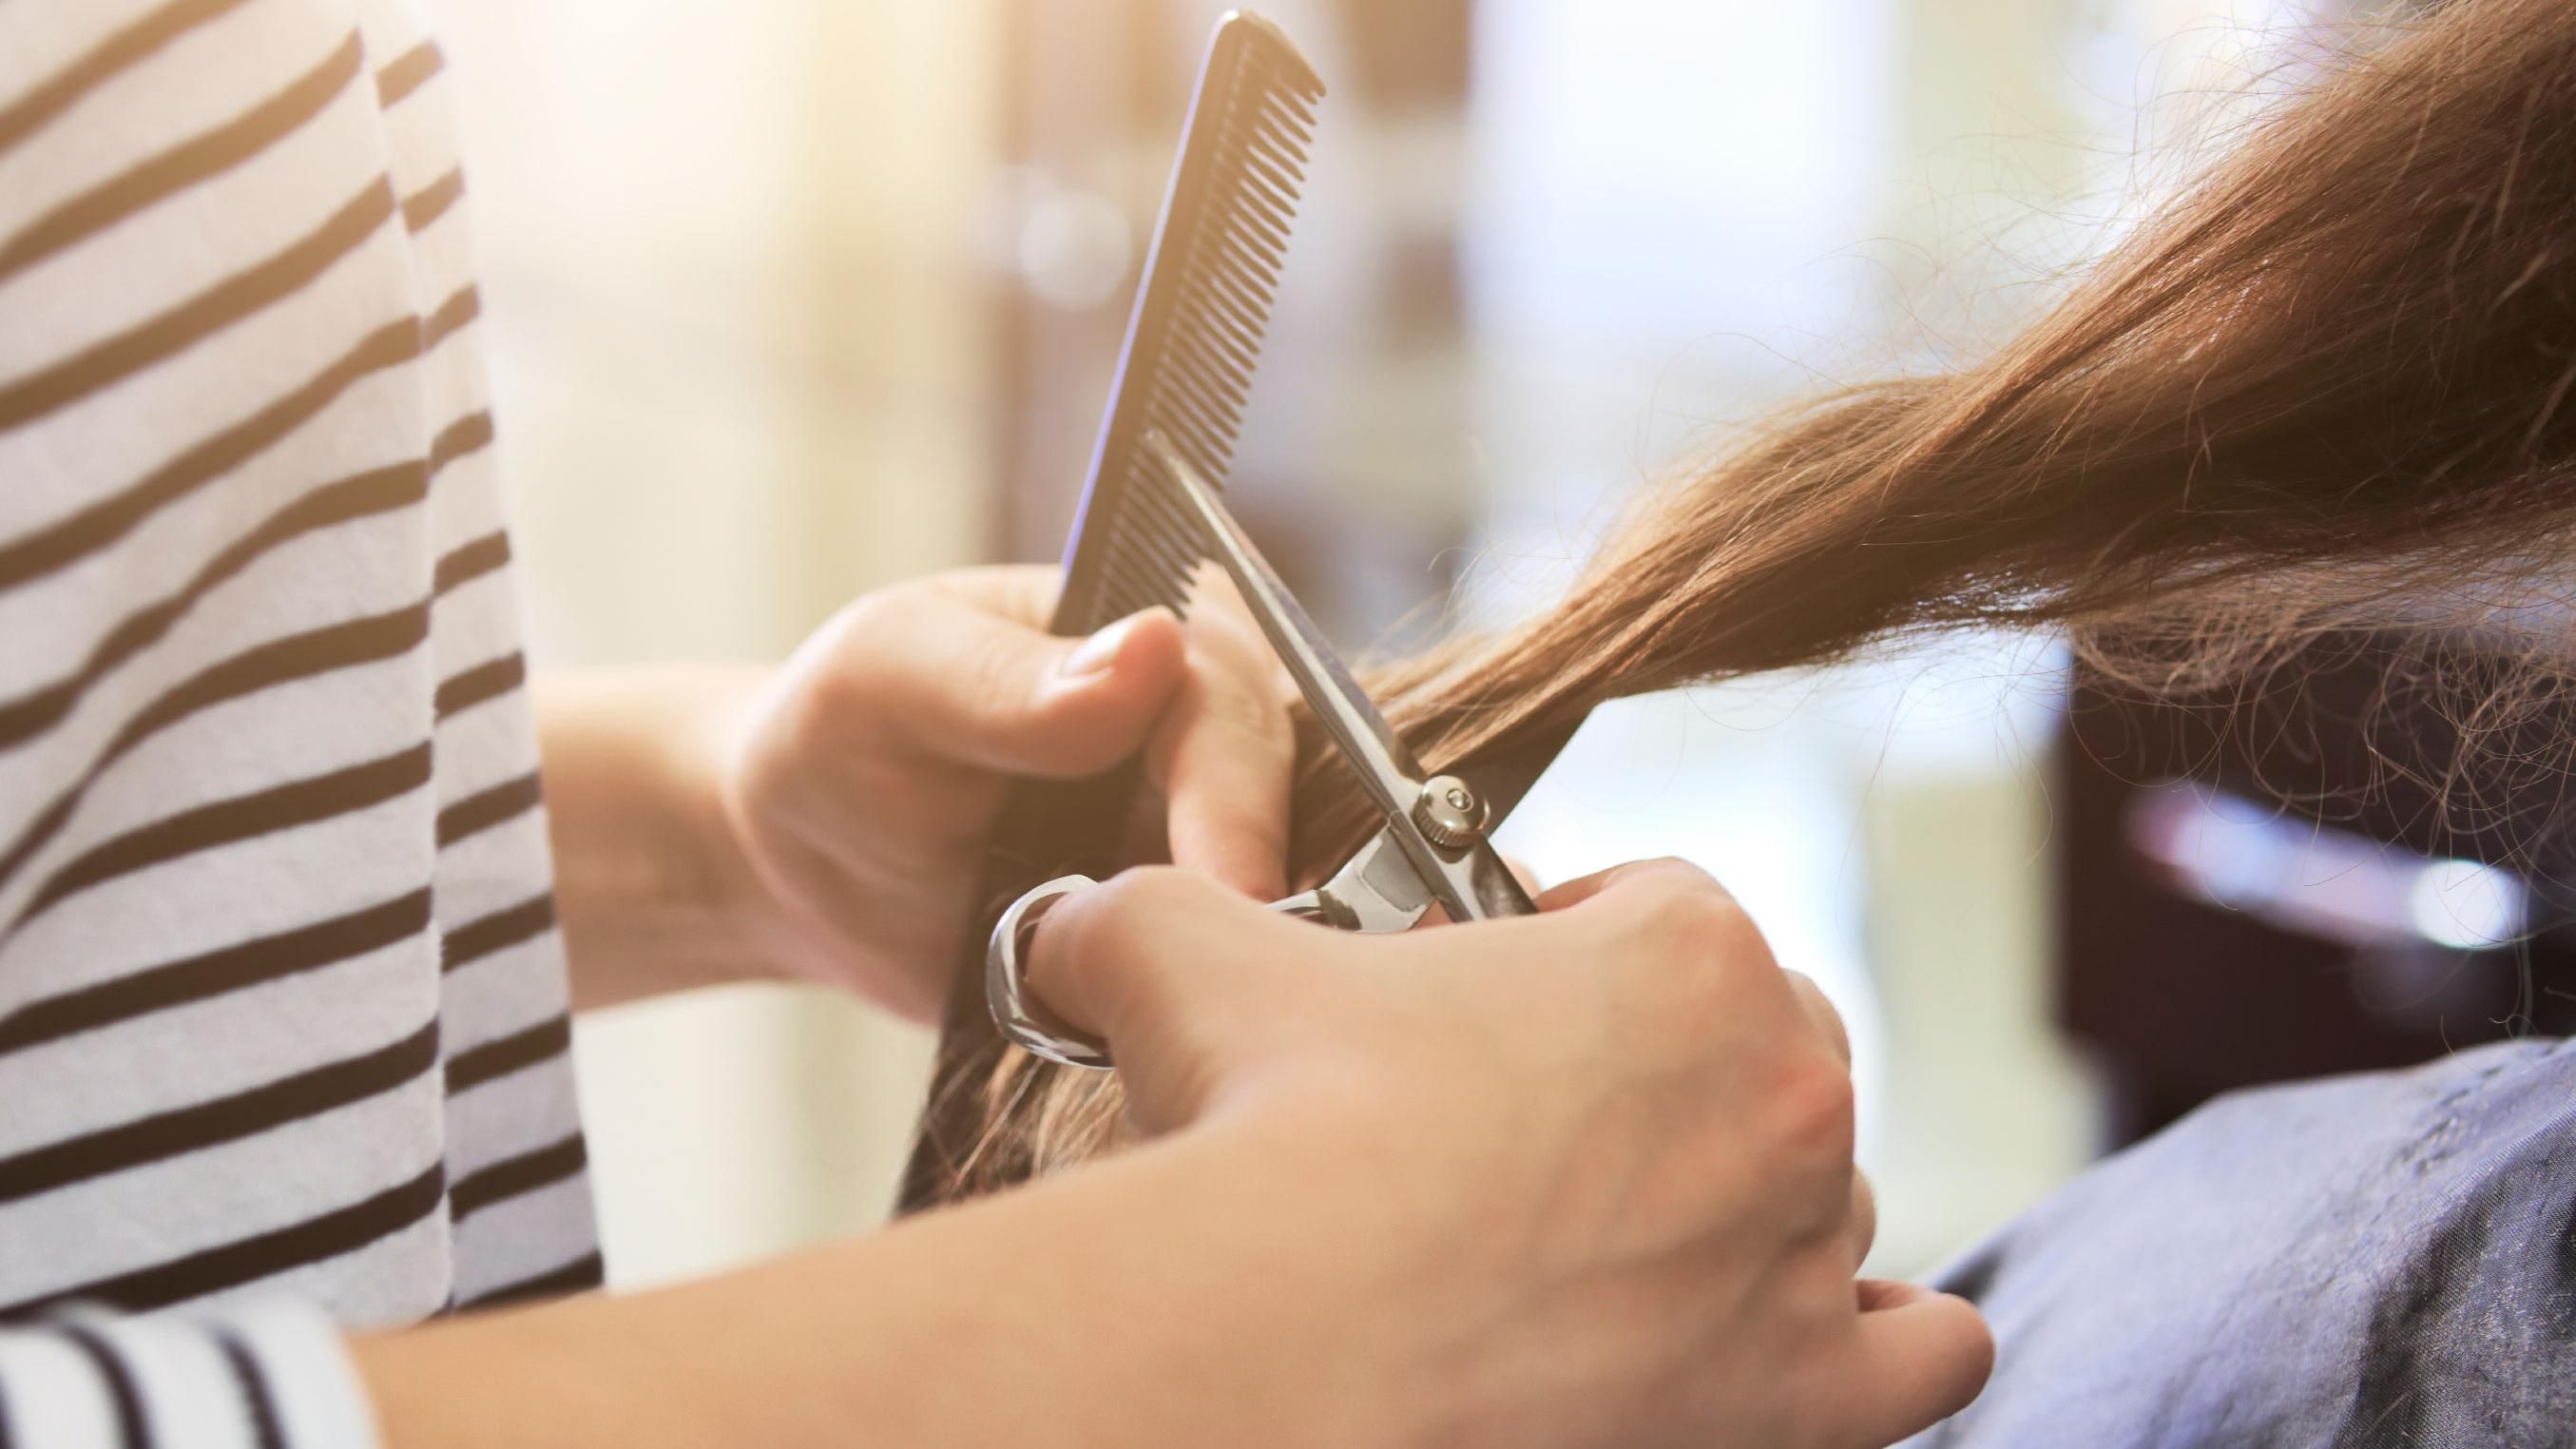 6 инфекций, которые можно подхватить в парикмахерской